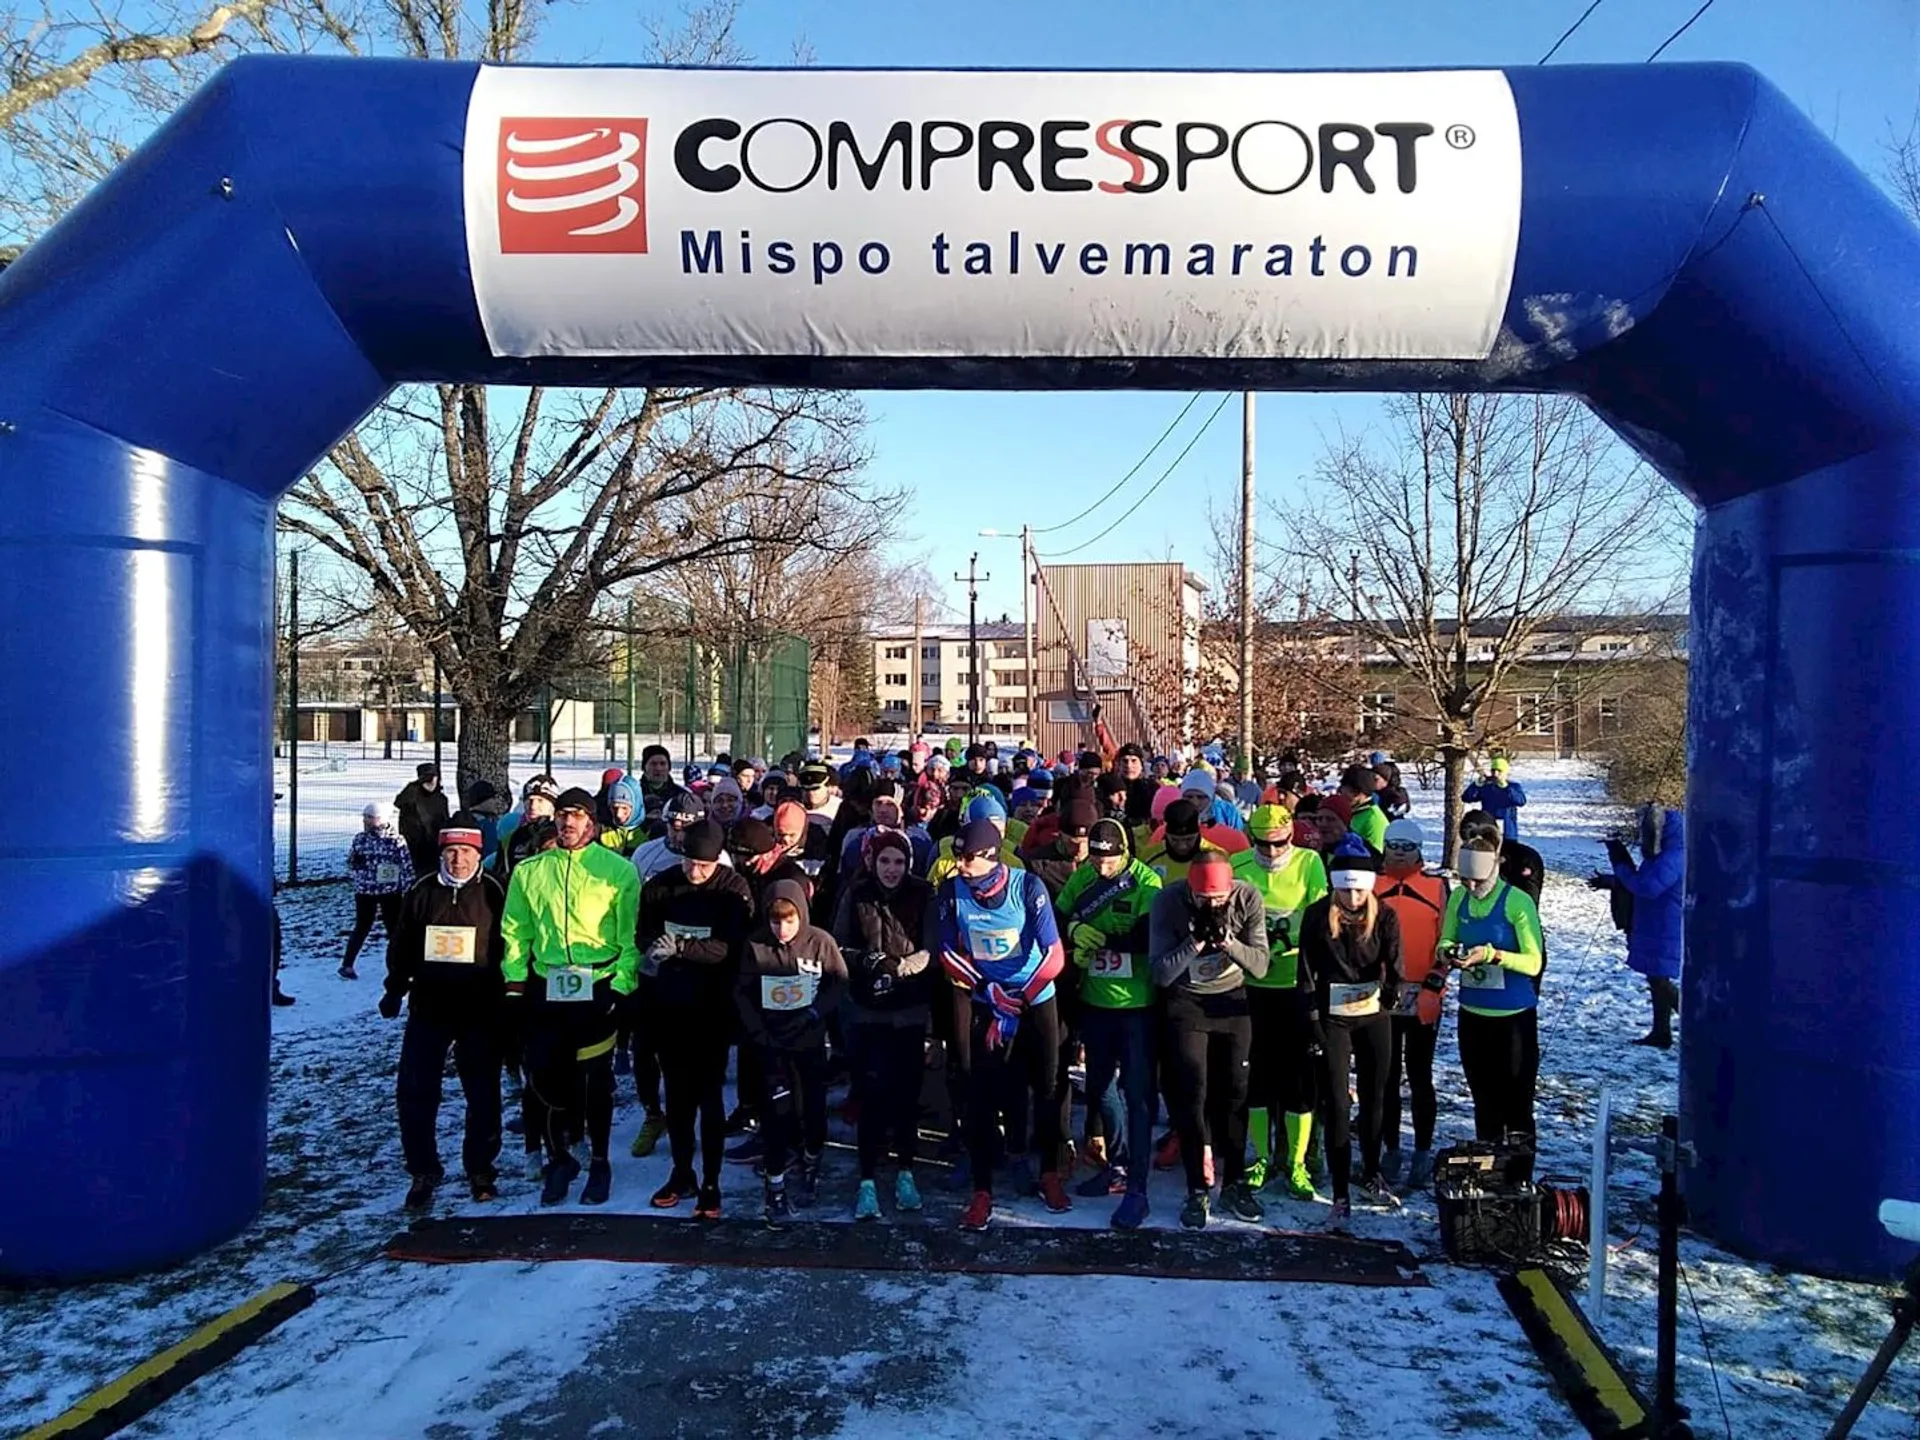 Mispo Winter marathon